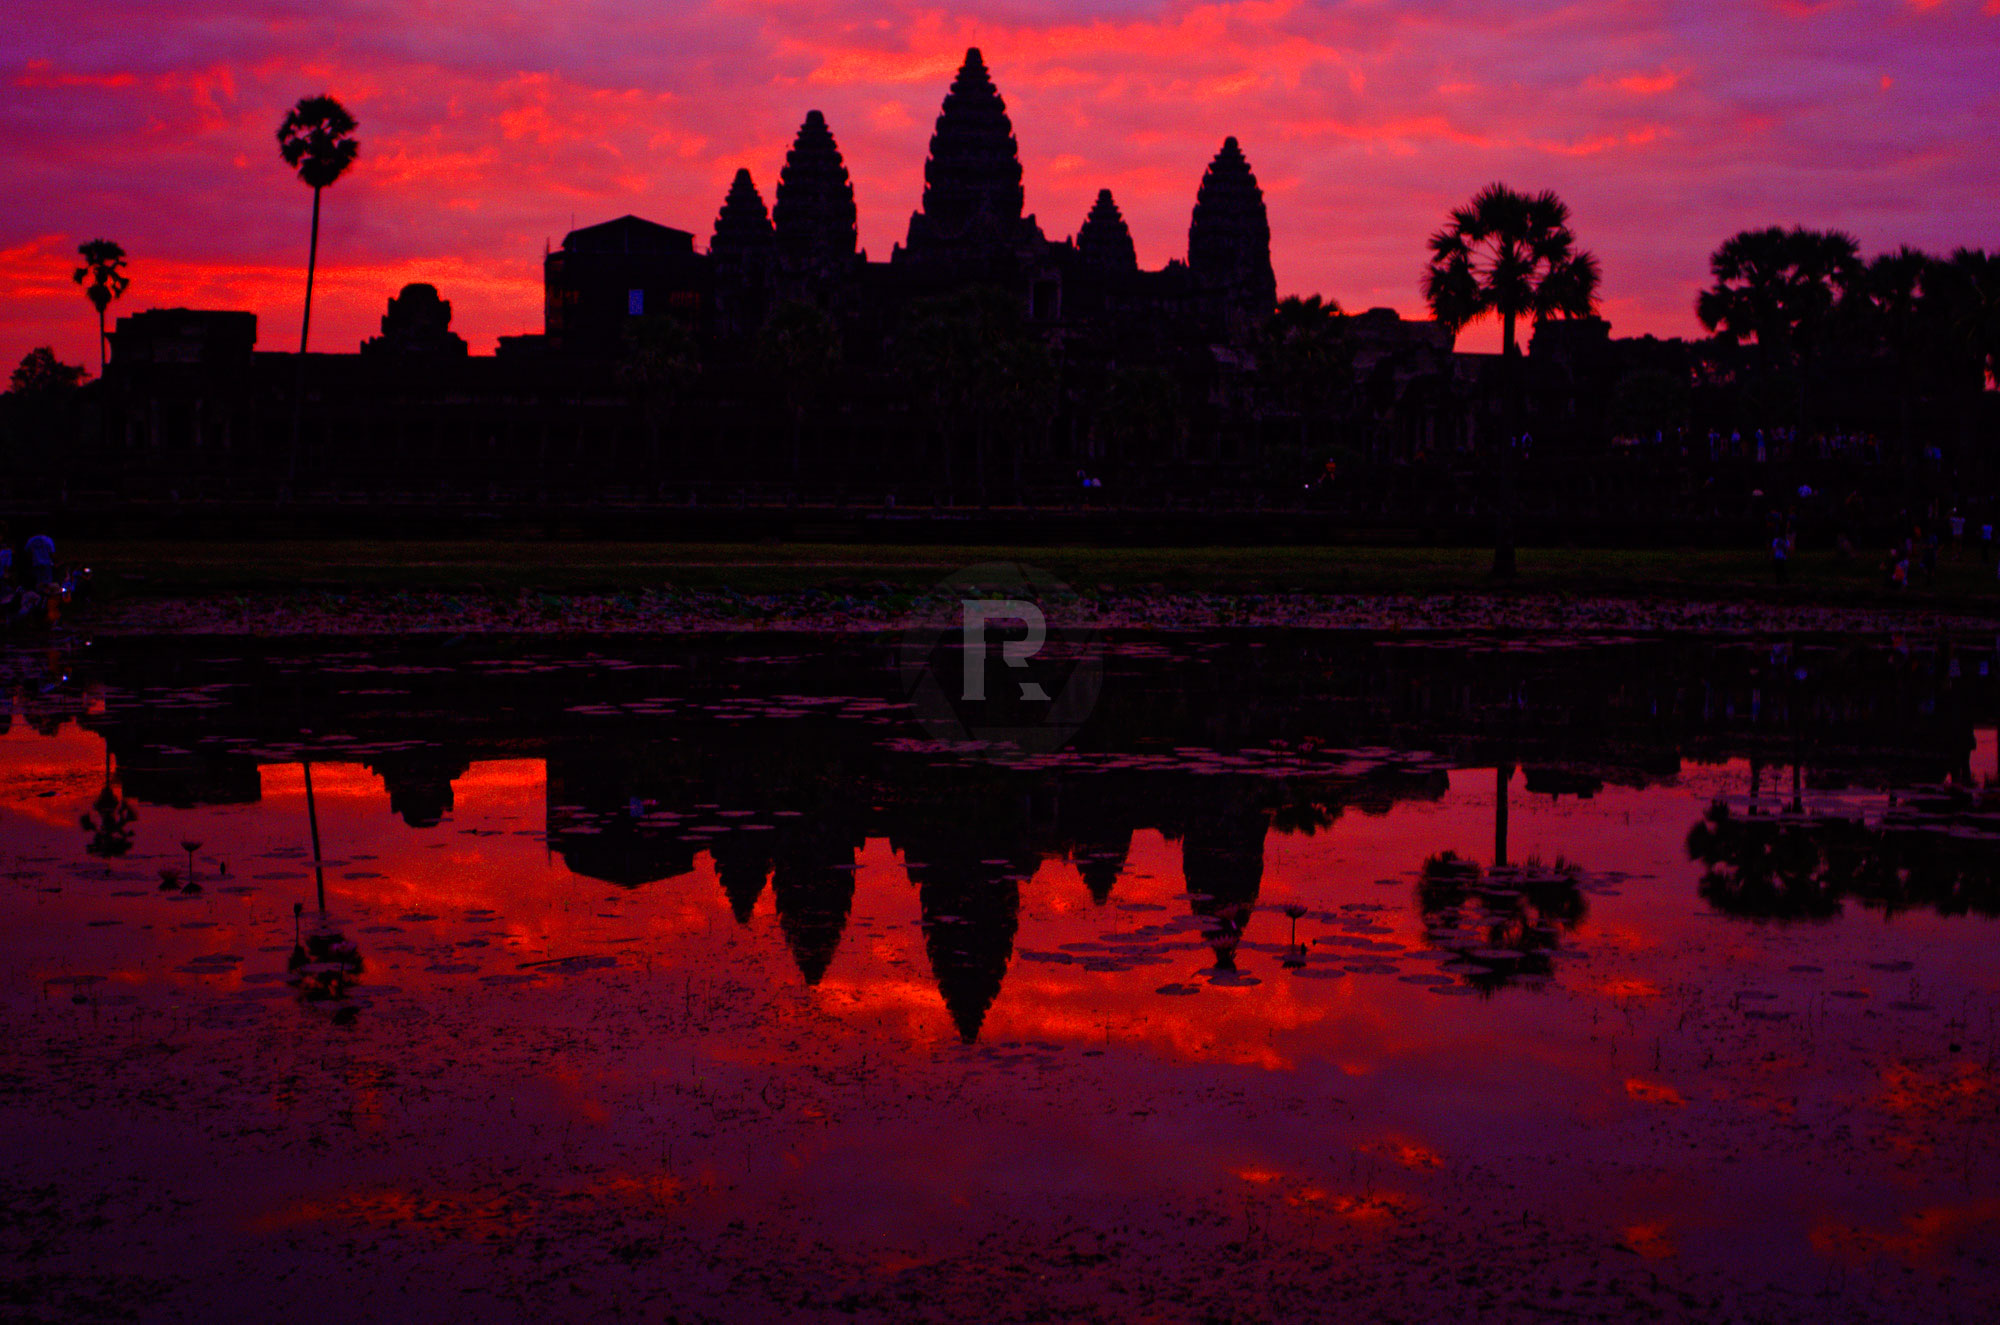 My Visit to Angkor Wat and a brief history